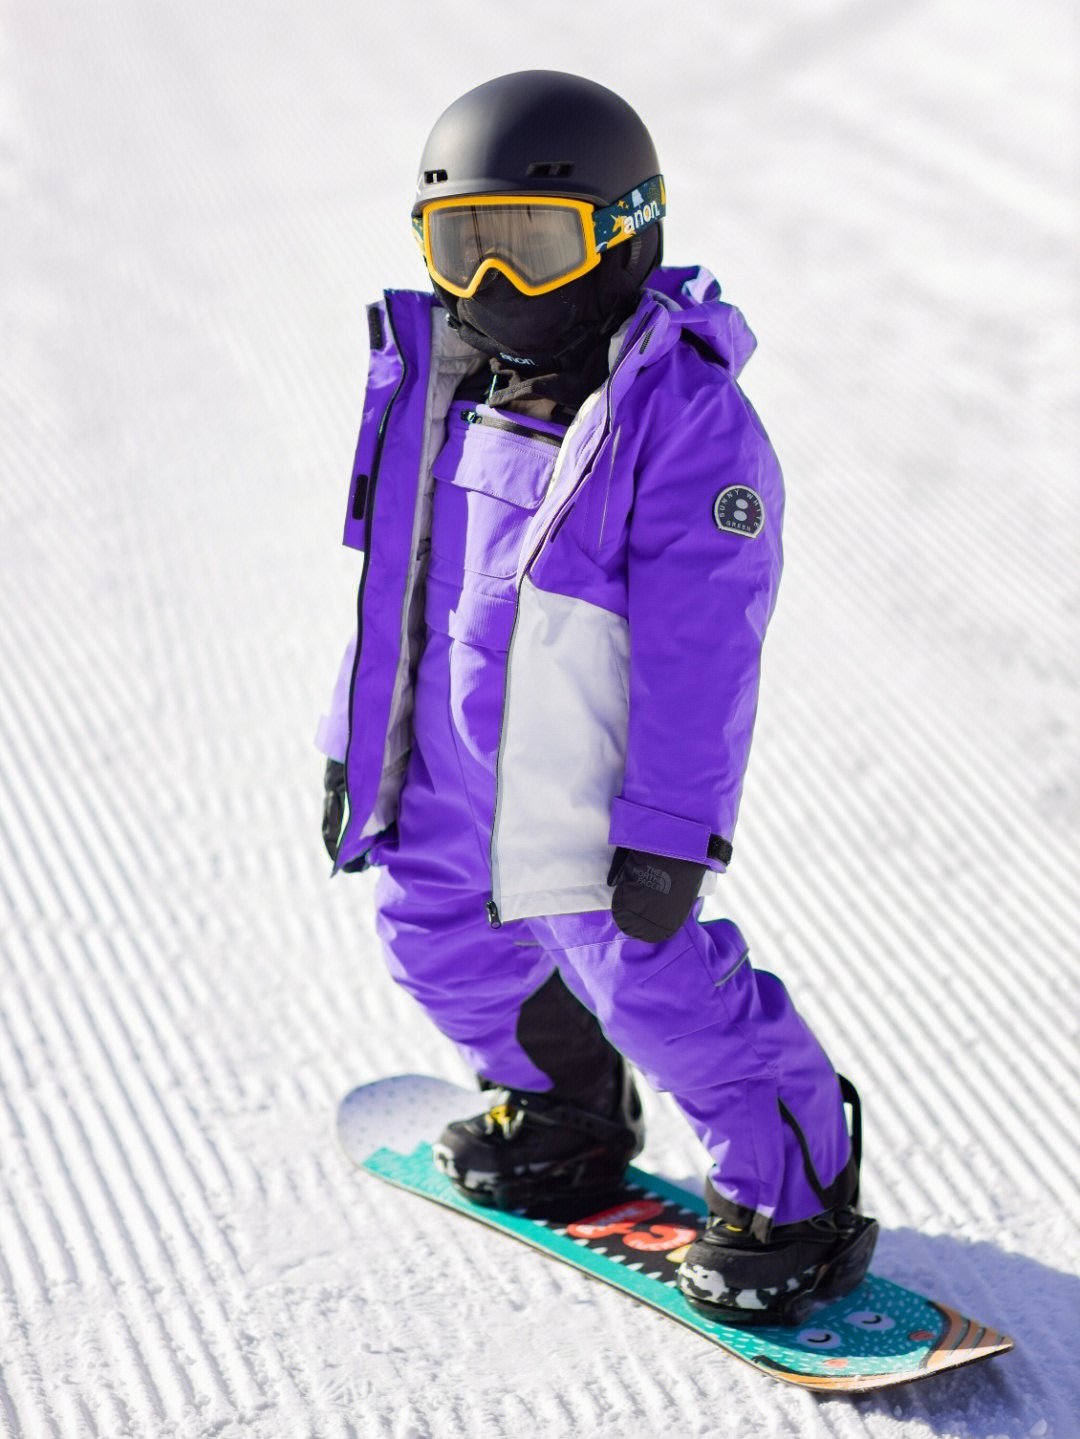 滑雪穿搭今年第一件羽绒滑雪服就是它了